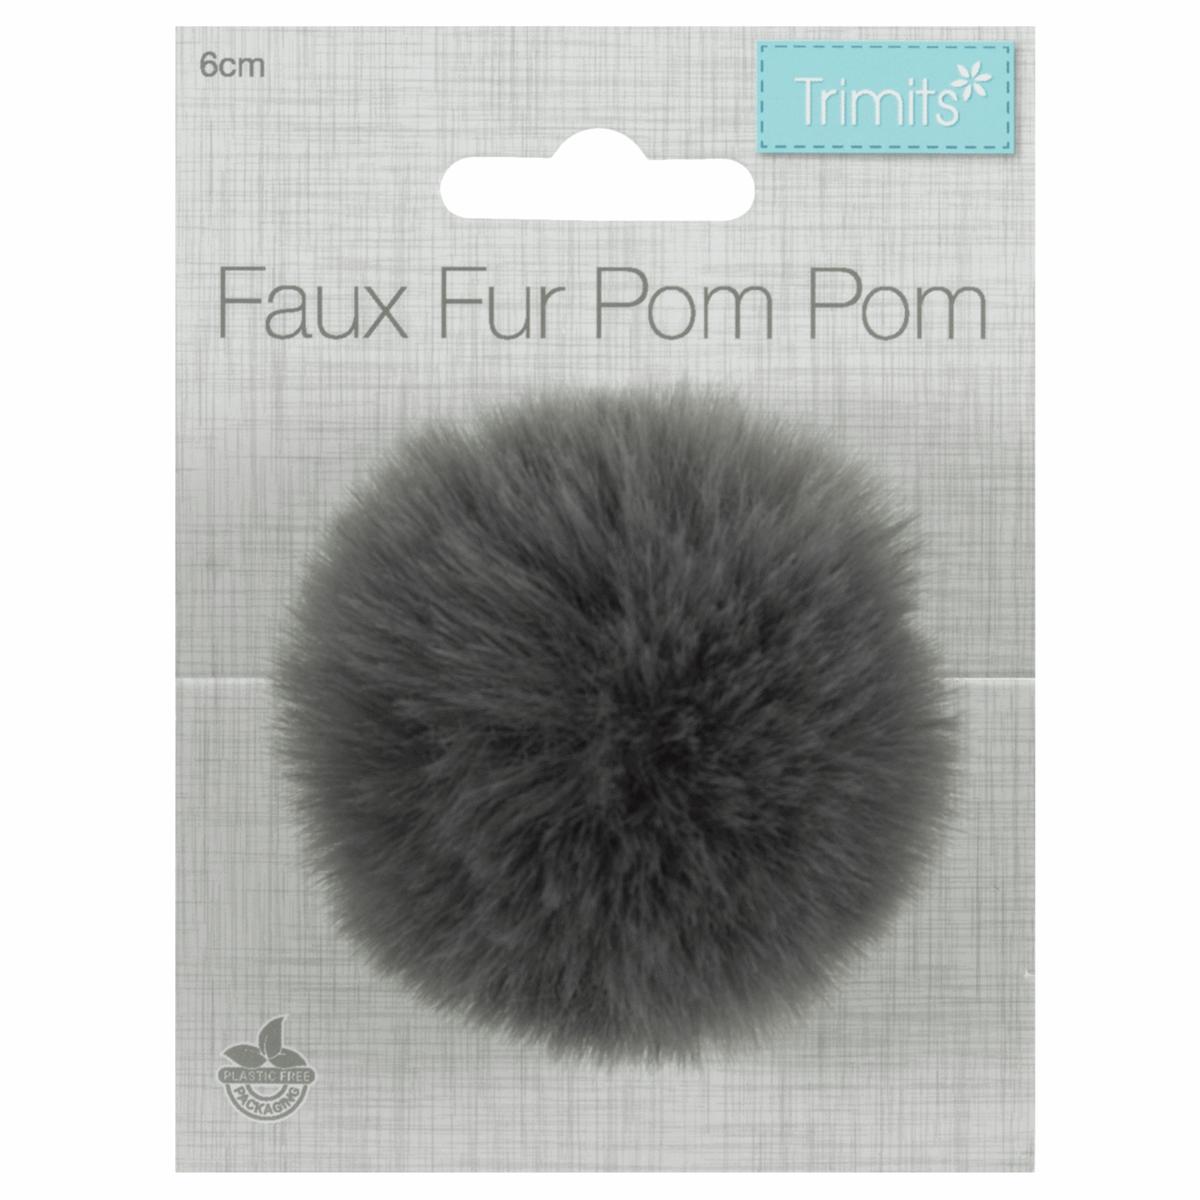 Trimits Faux Fur Super Fluffy Pom Pom - Grey 6cm (Medium)